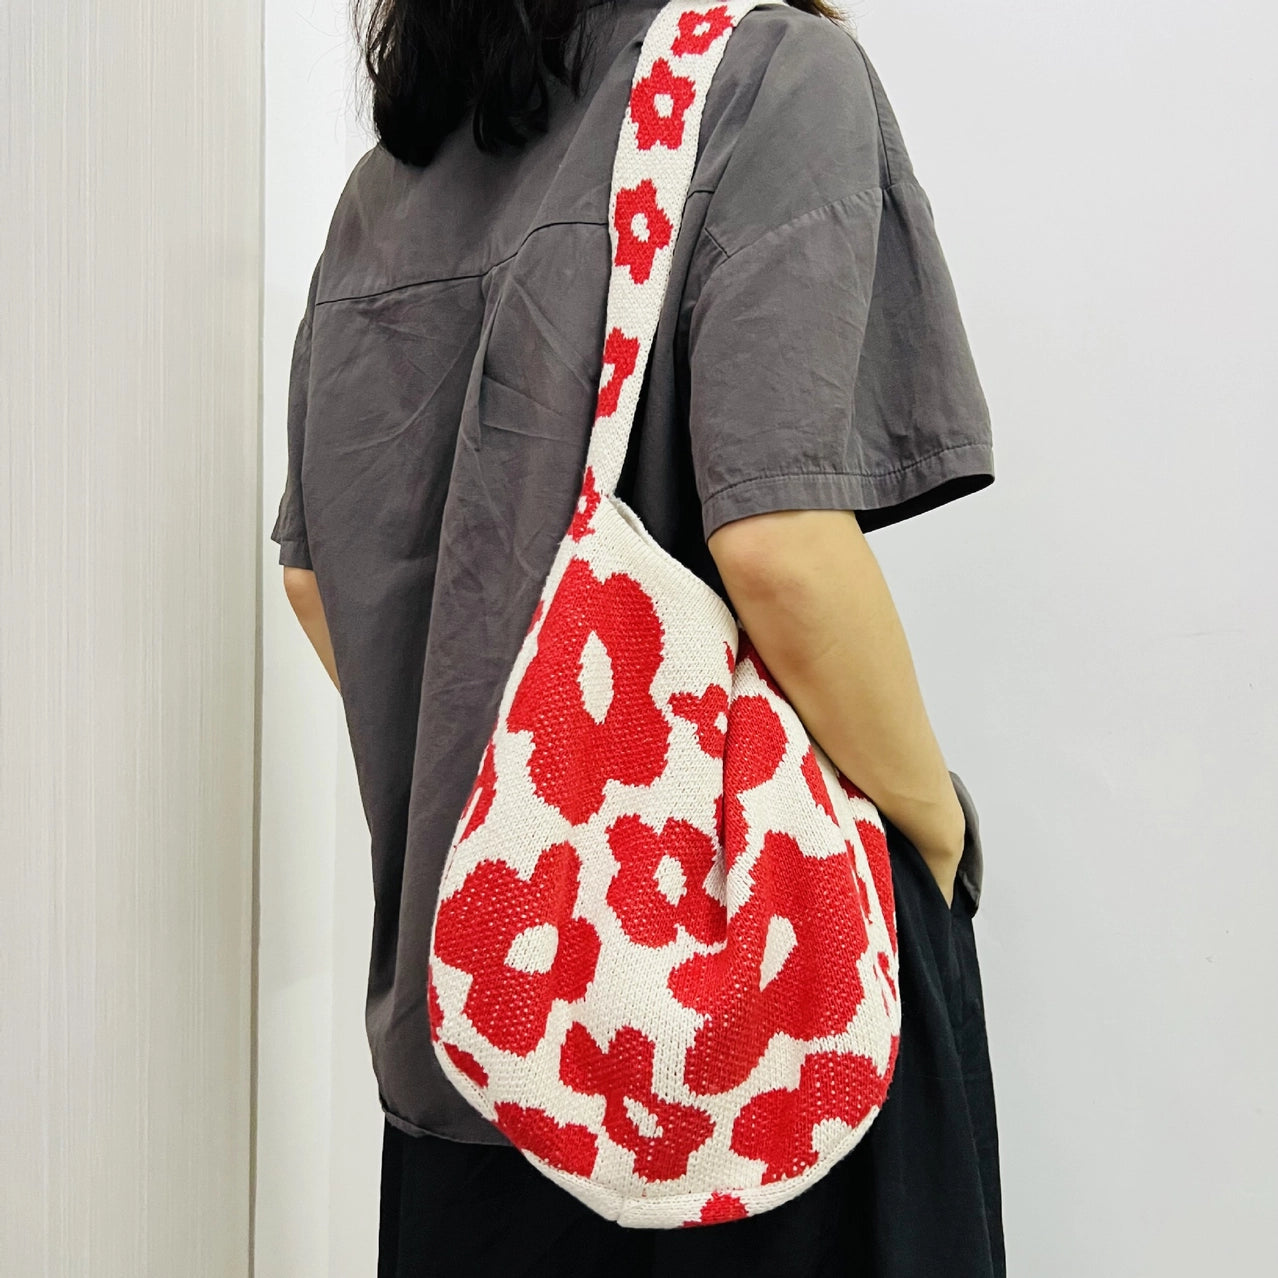 Flower Market Knit Bag - Red